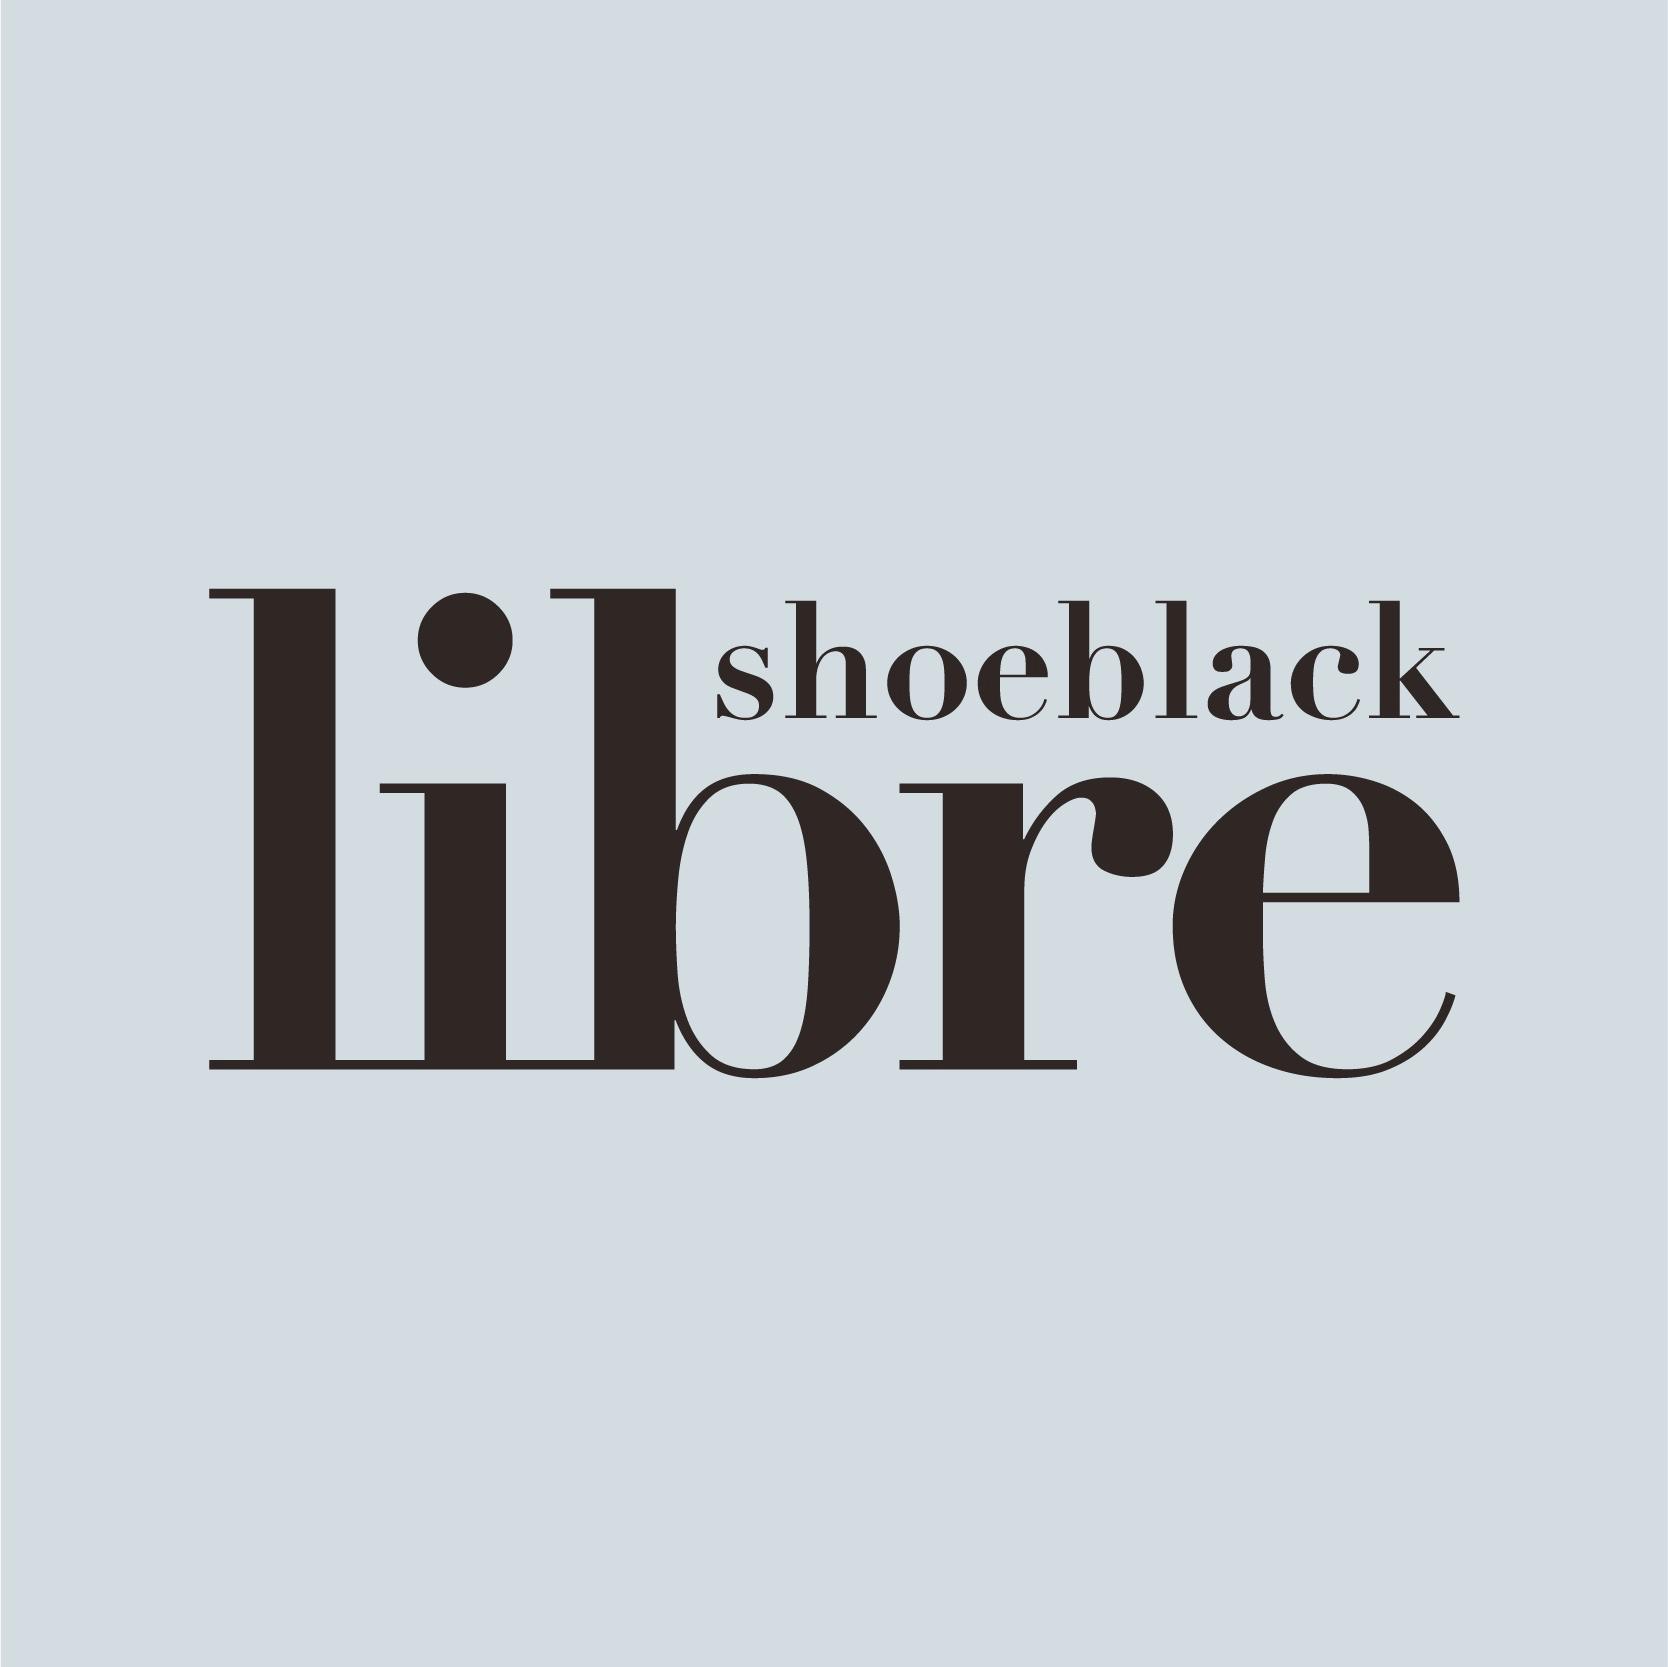 shoeblack libre Logo